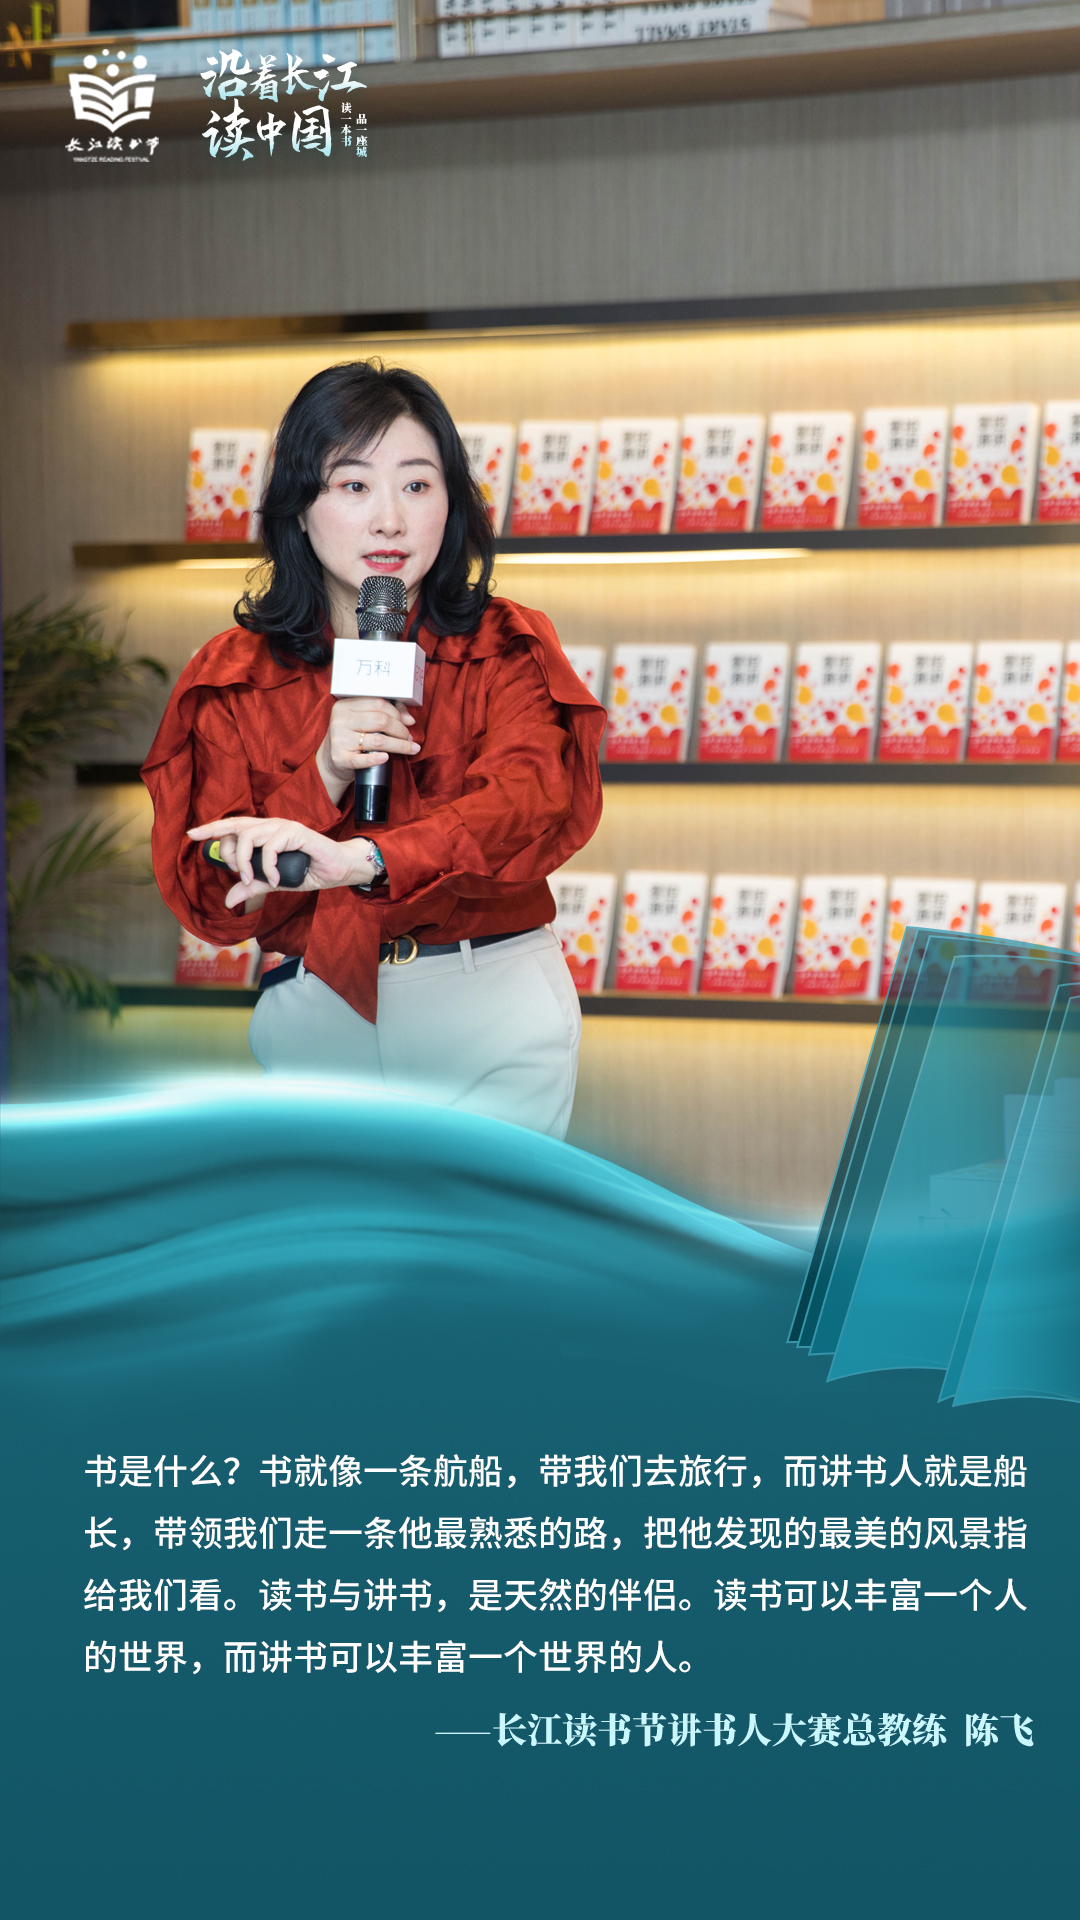 长江沿线13座省级公共图书馆携手启动第三届讲书人大赛